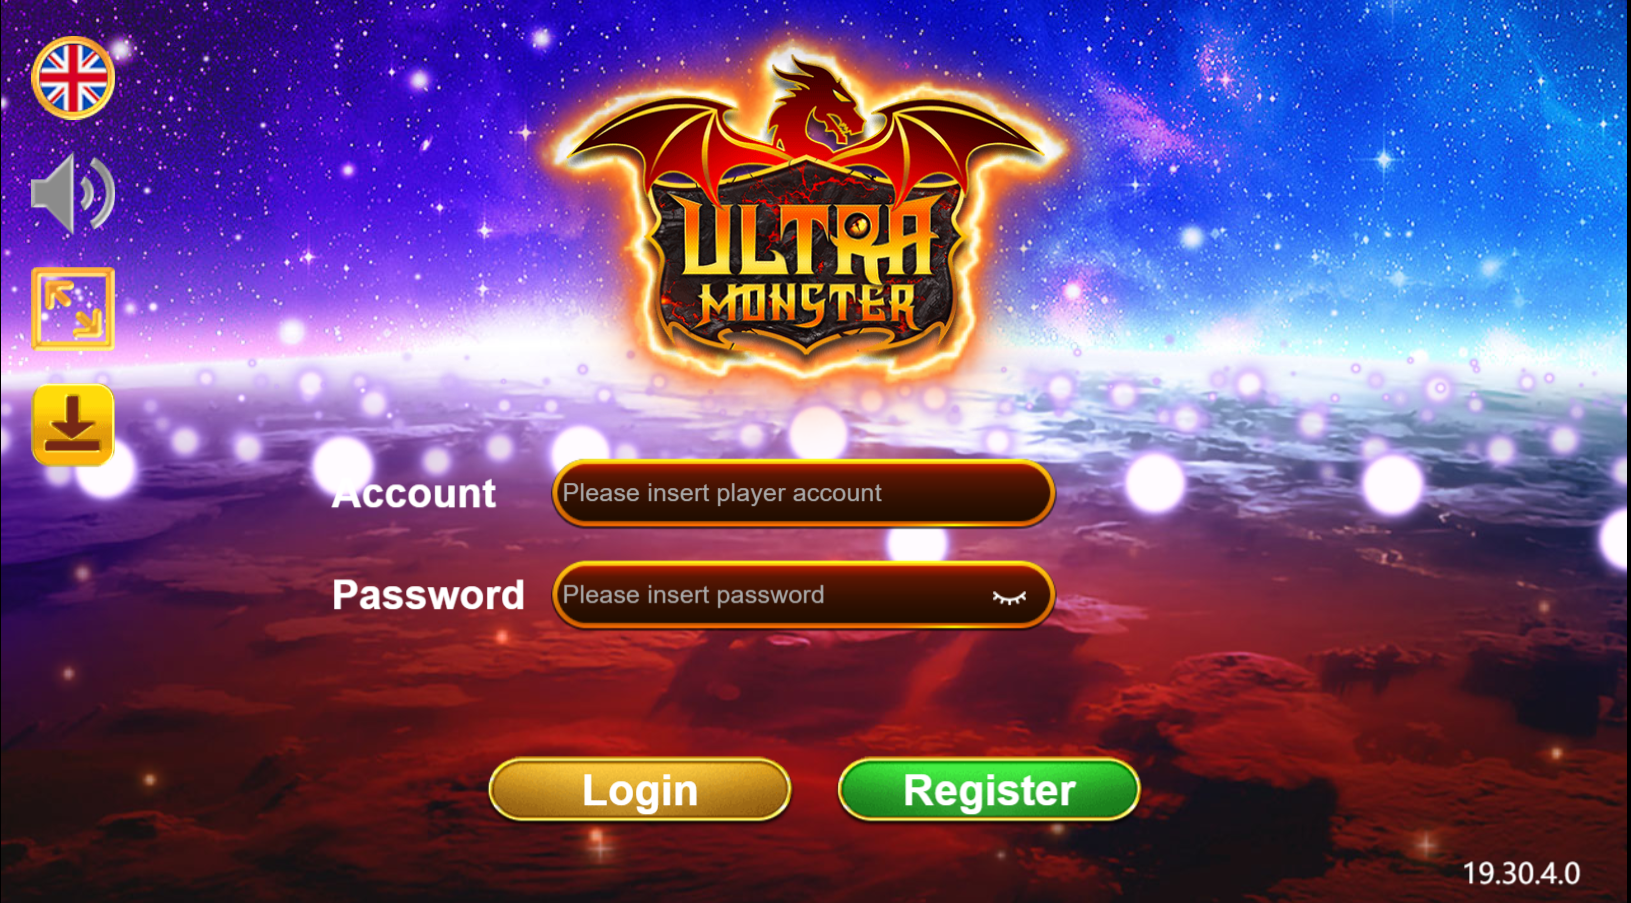 Ultra Monster Casino